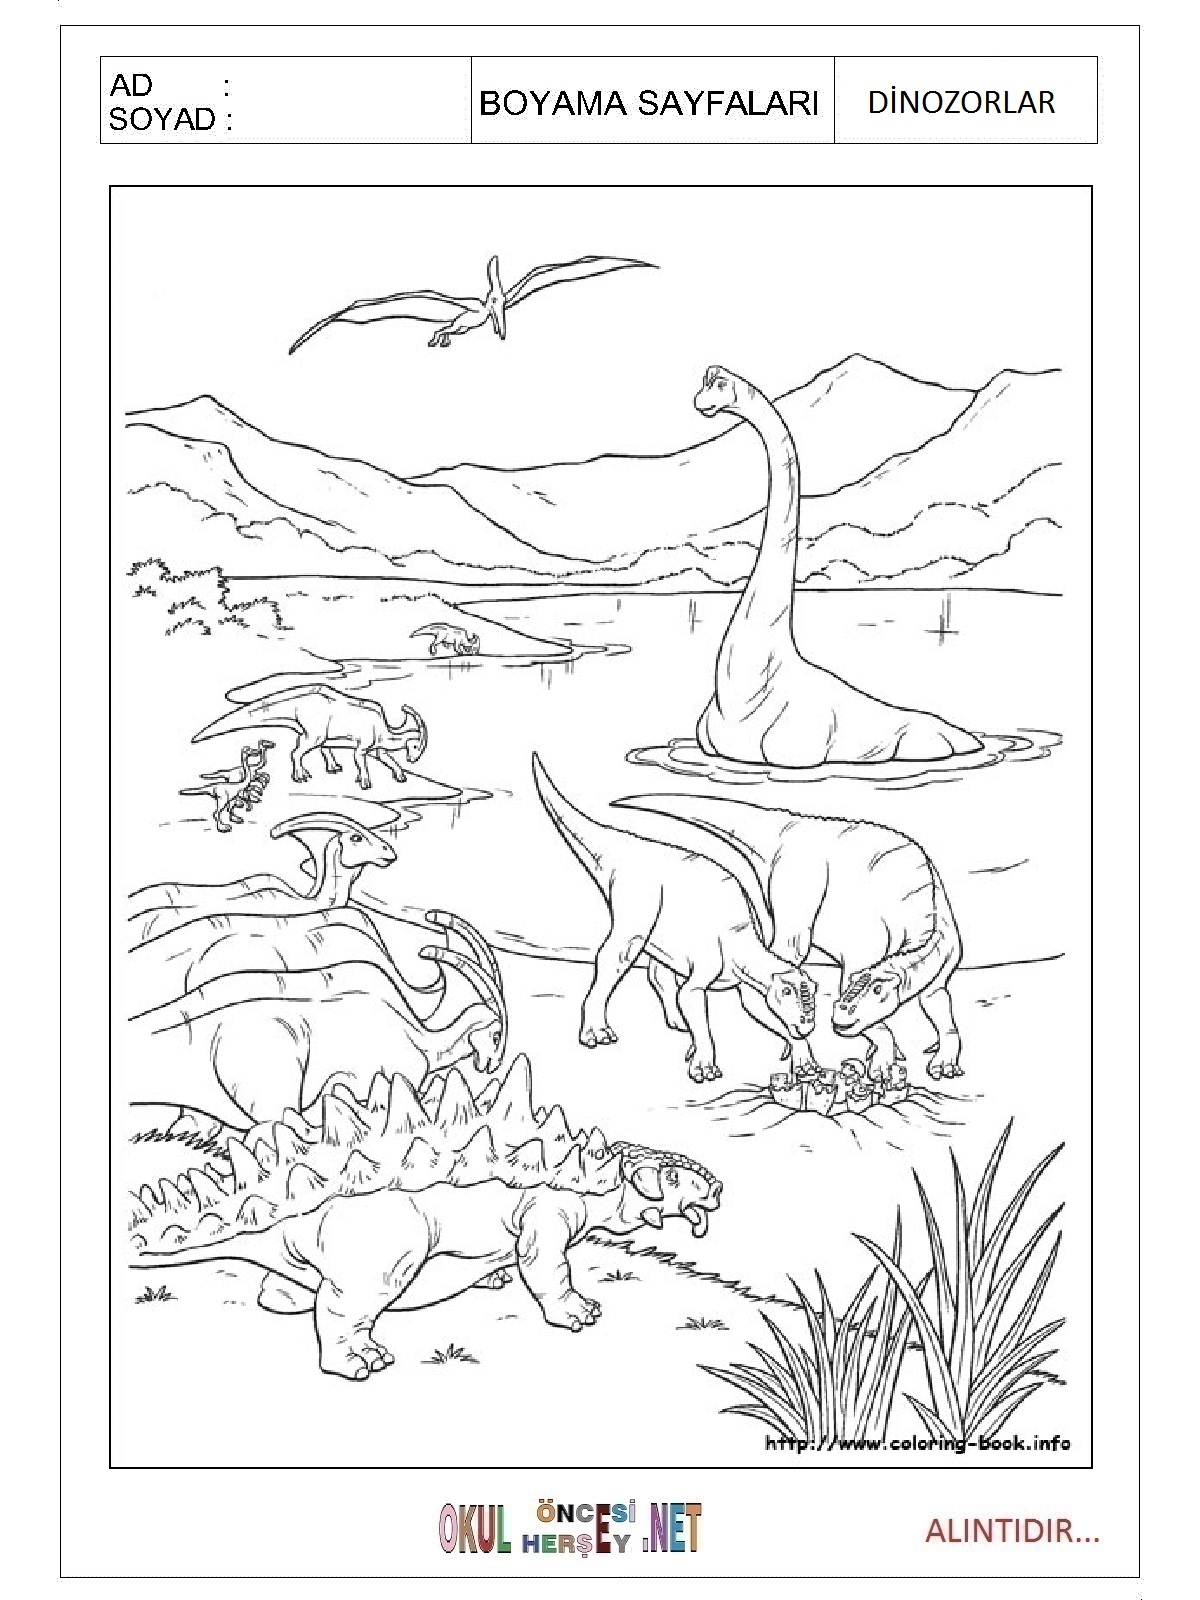 Dinozorlar boyama sayfası